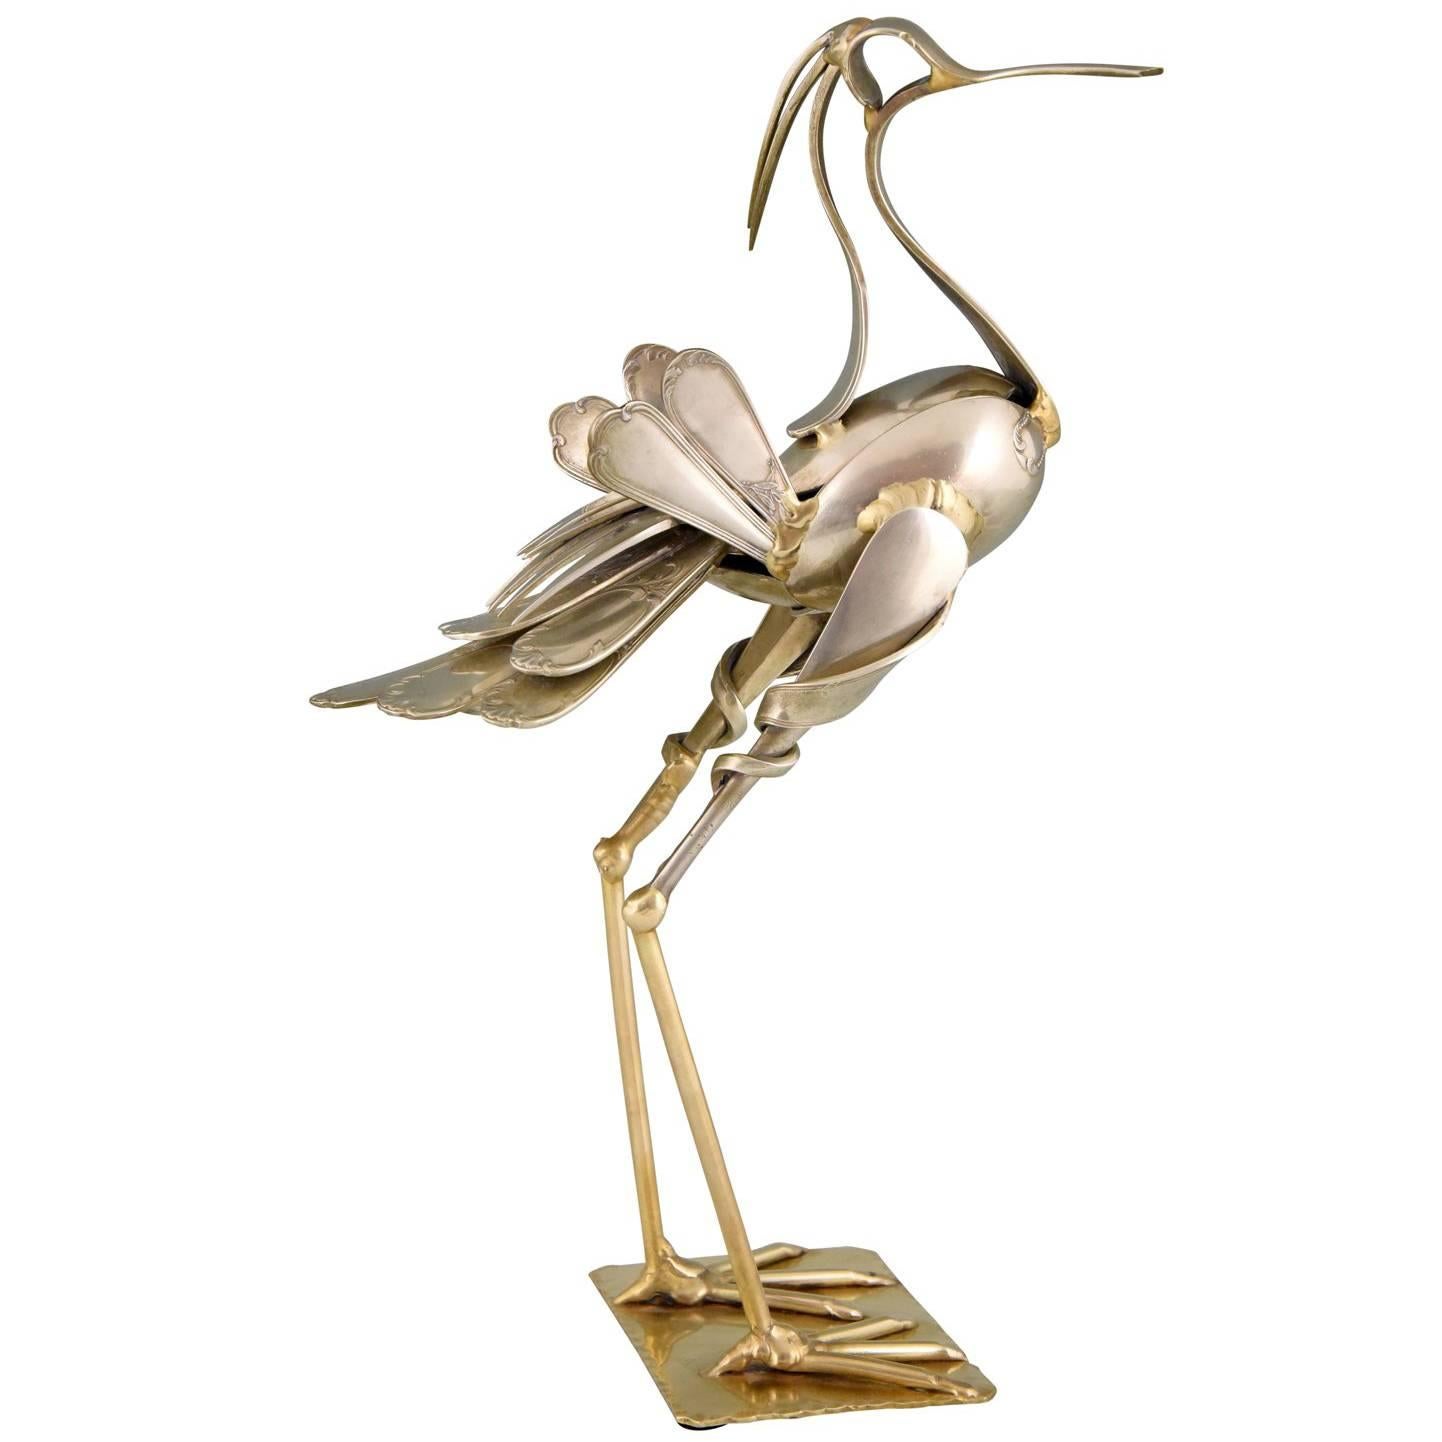 Modern Art Cutlery Sculpture of a Bird by Gerard Bouvier, France, 1998